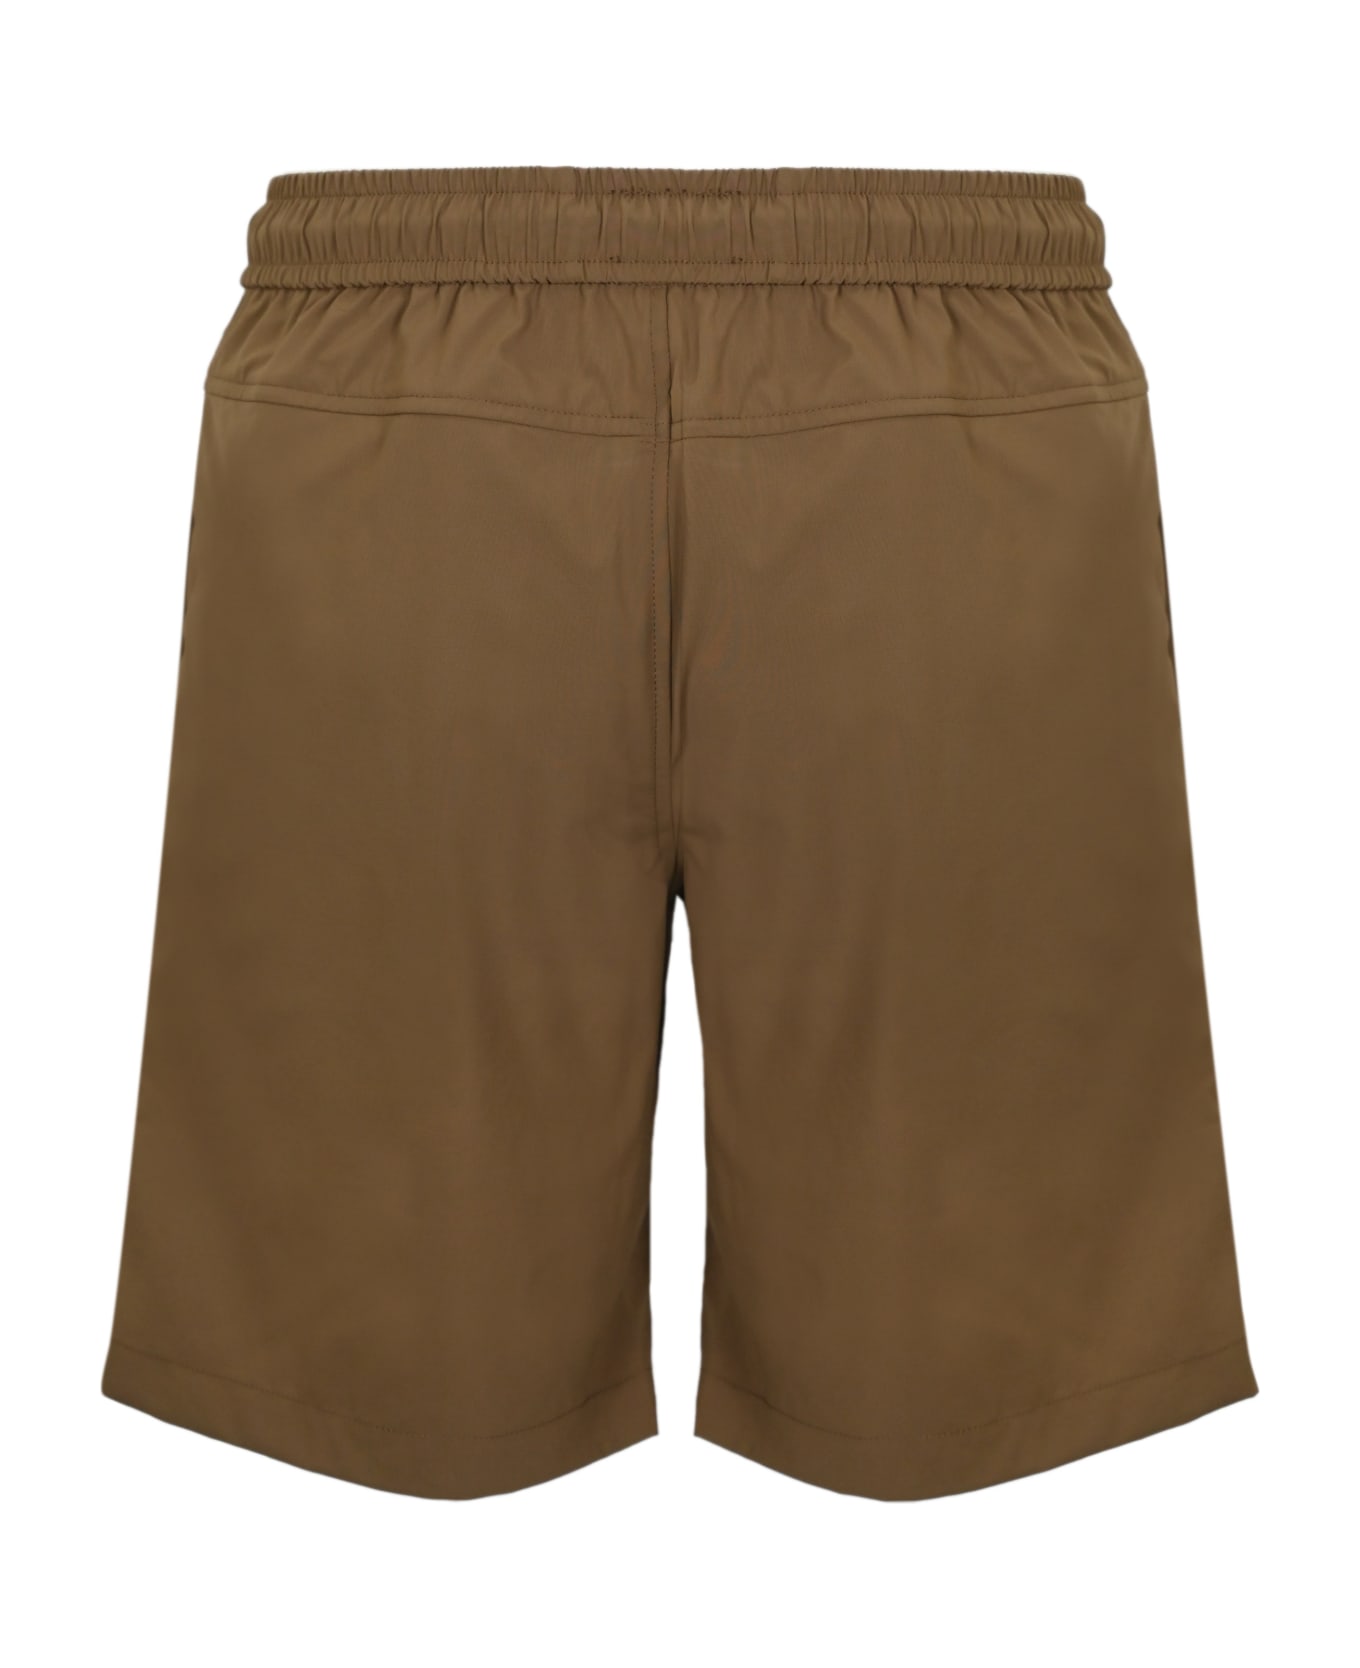 K-Way Nesty Travel Nylon Shorts - Brown corda